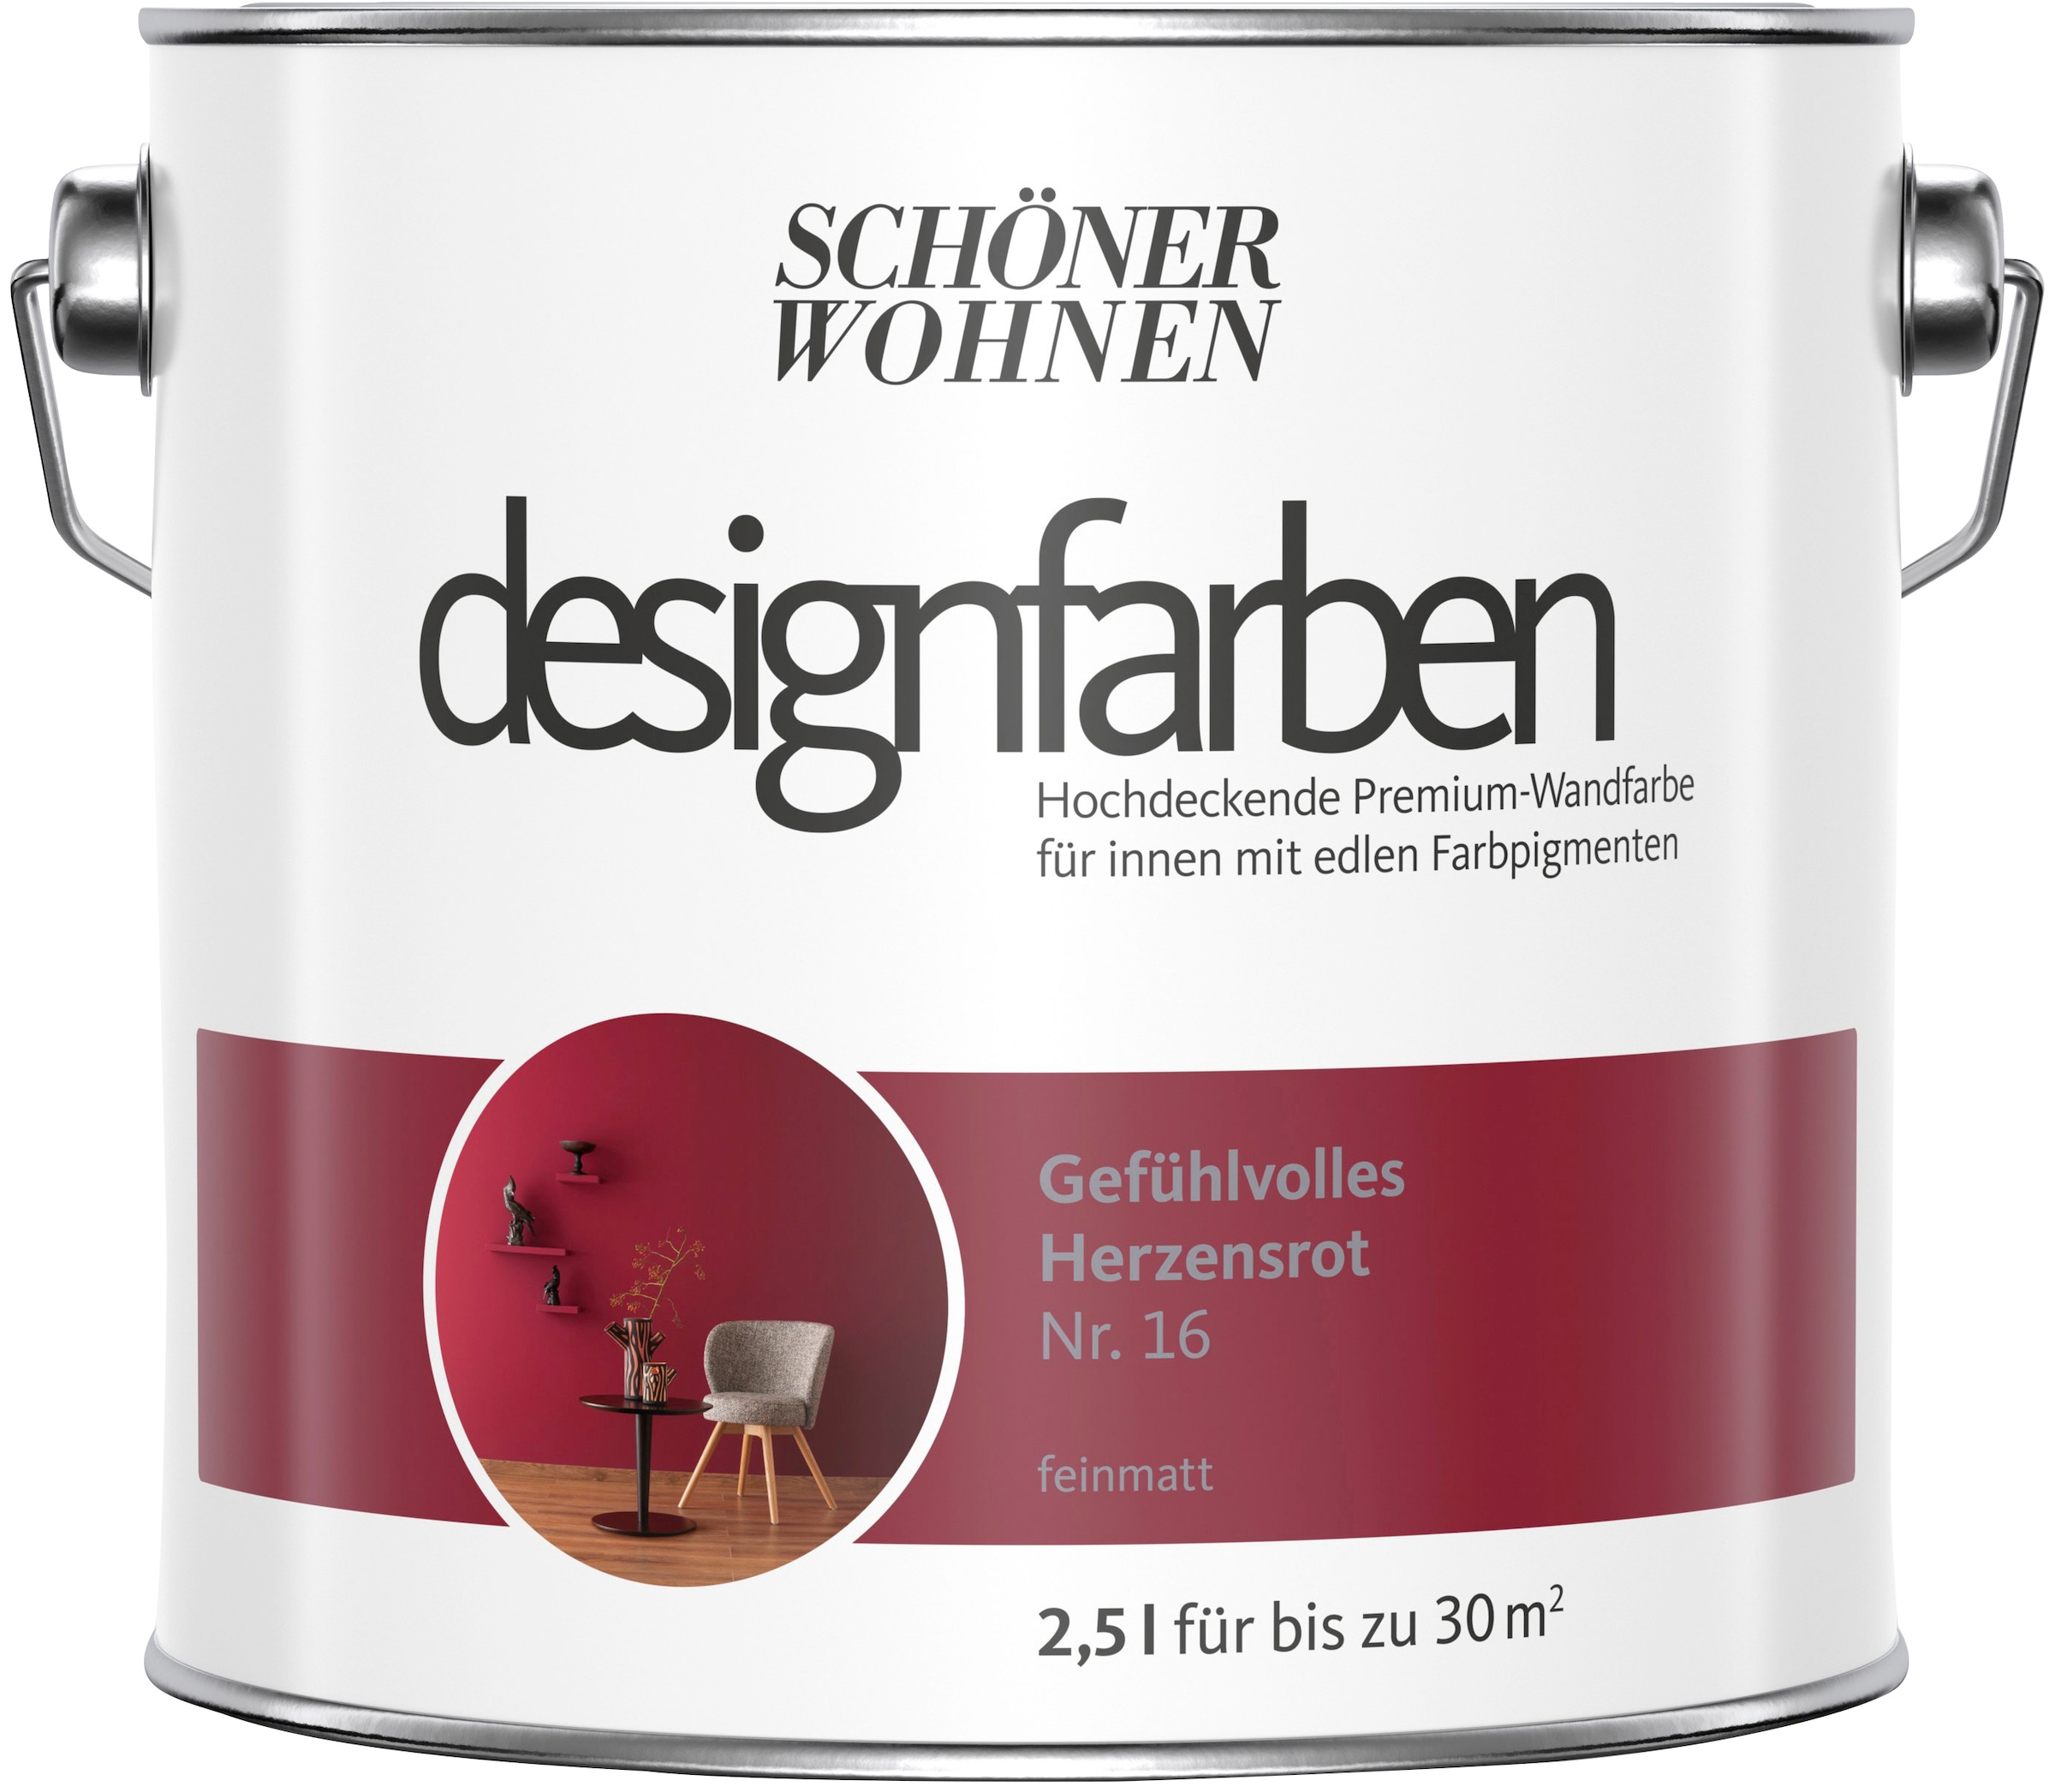 Farbwelt BAUR per »Designfarben«, SCHÖNER | Premium-Wandfarbe, Deckenfarbe hochdeckende FARBE und Wand- rot WOHNEN Rechnung